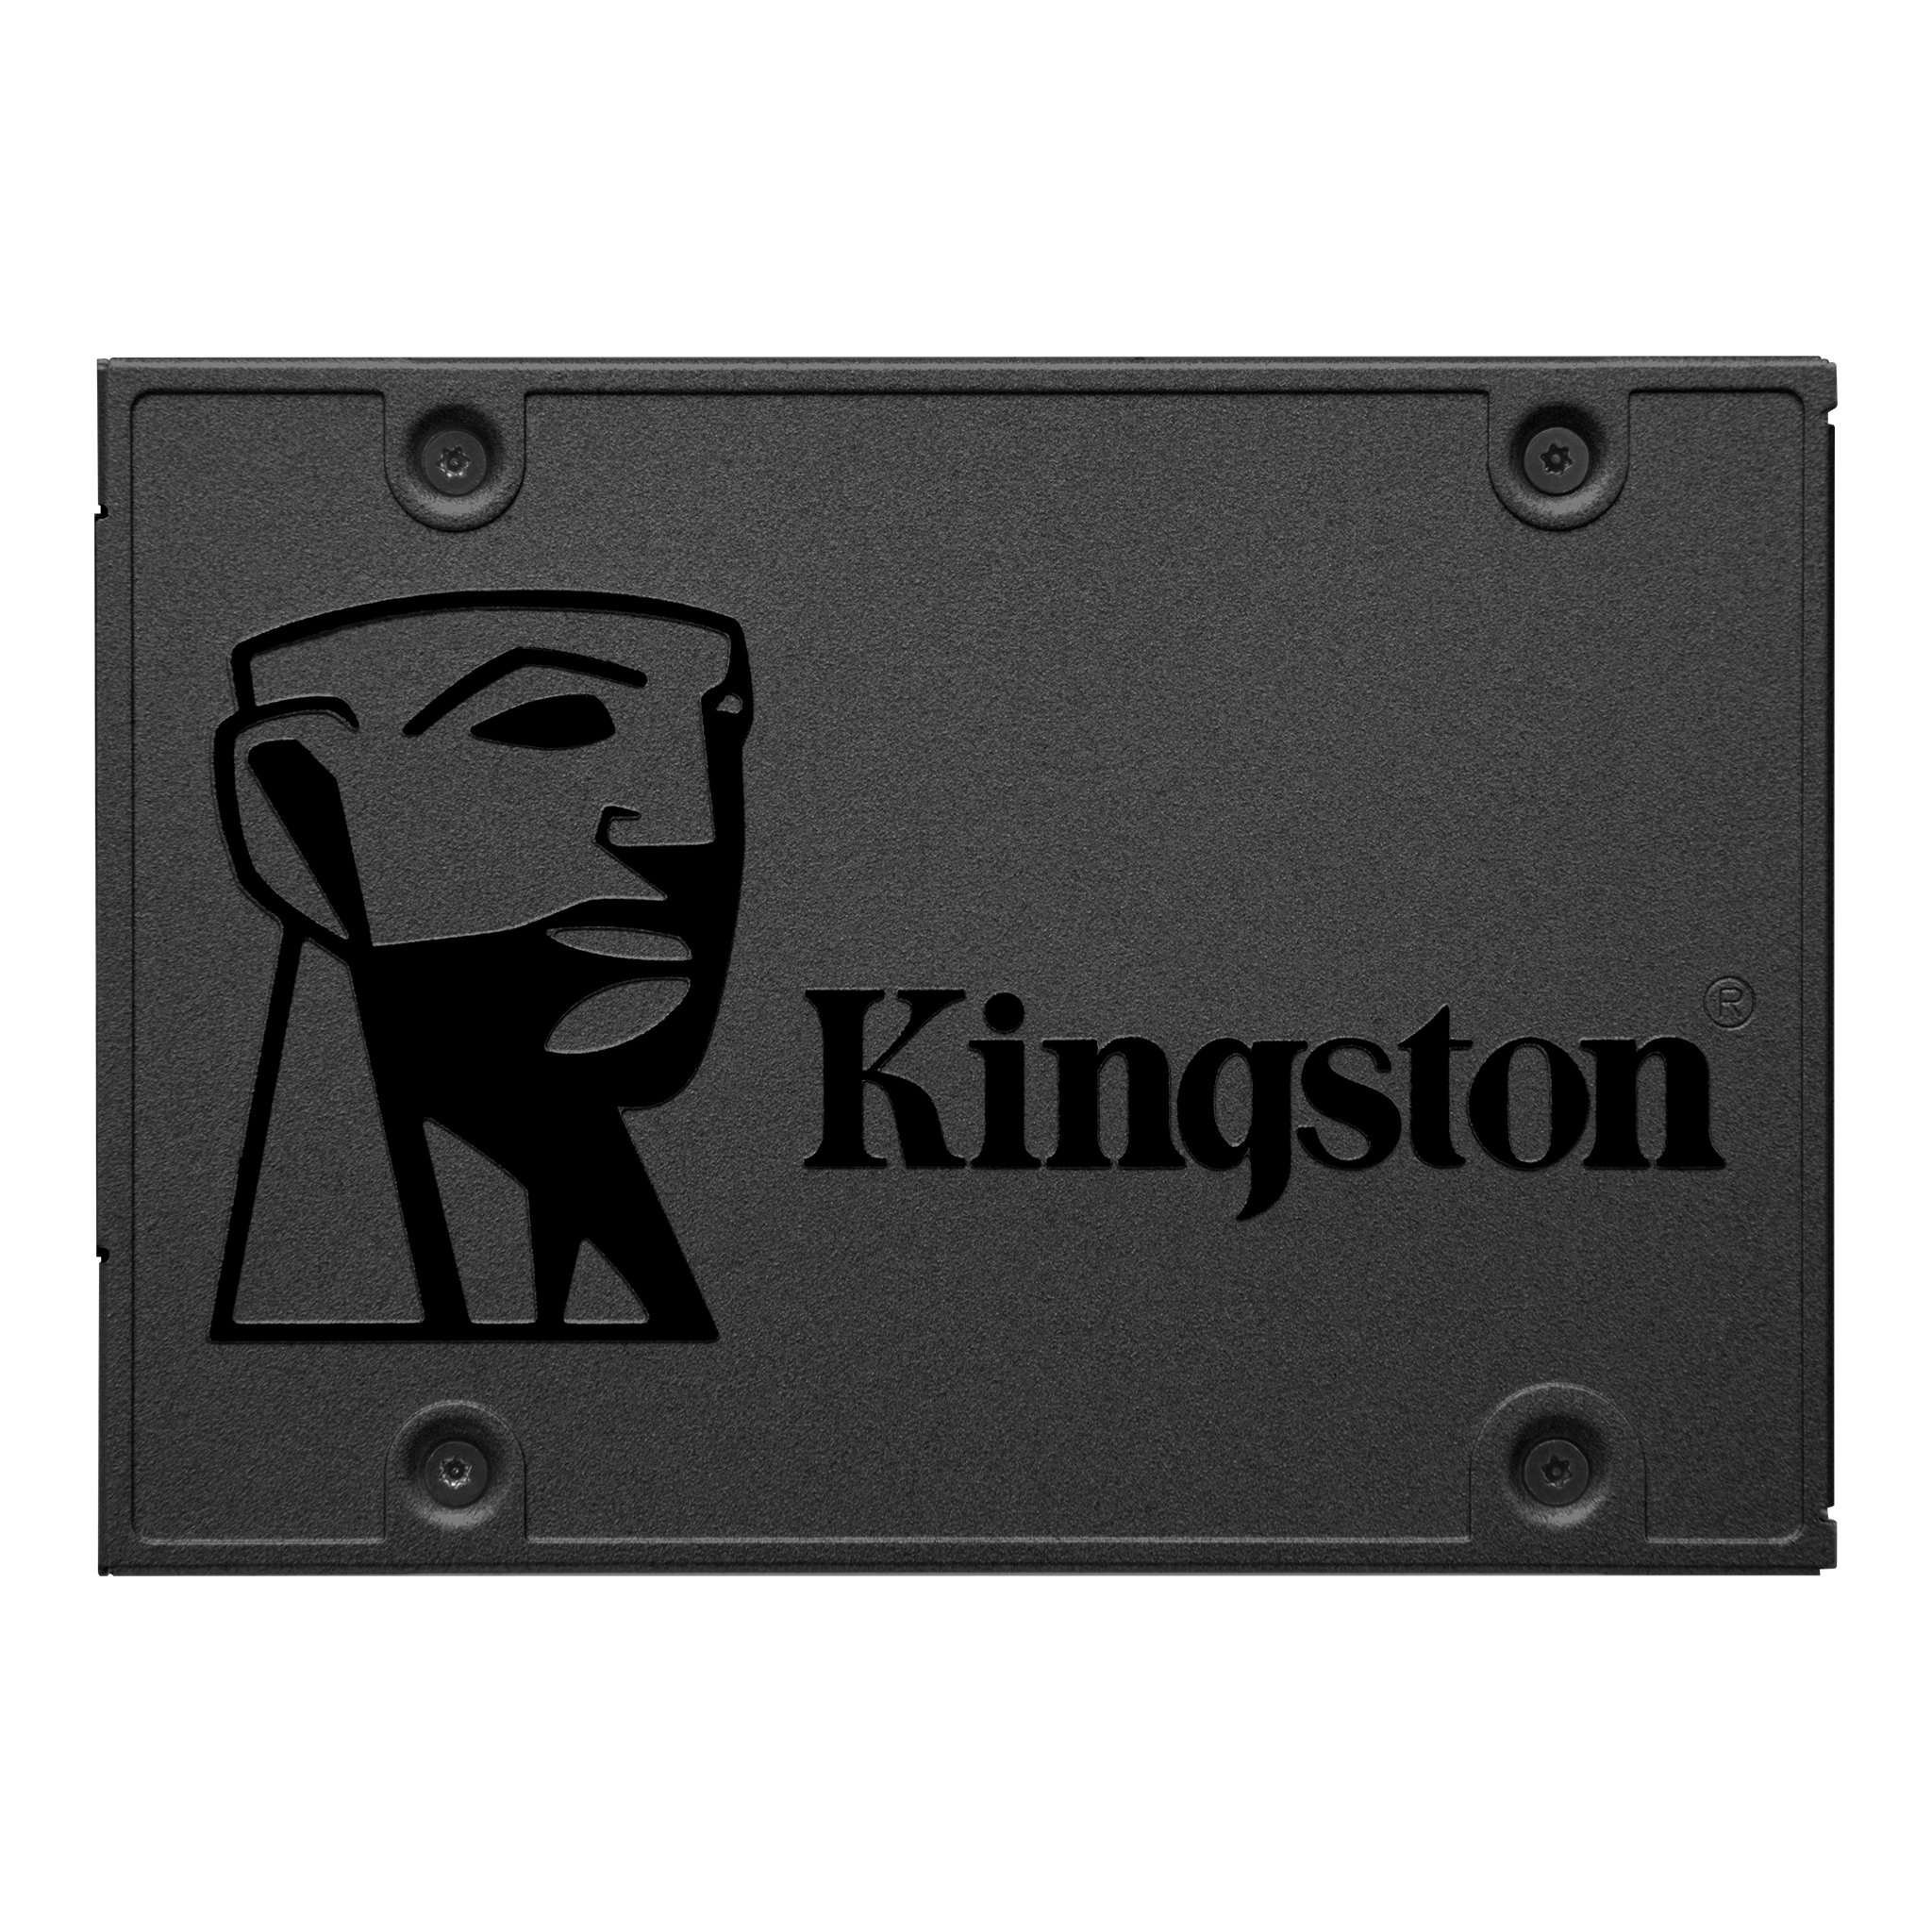 Dysk Kingston SSD A400 SERIES 960GB przód
                        